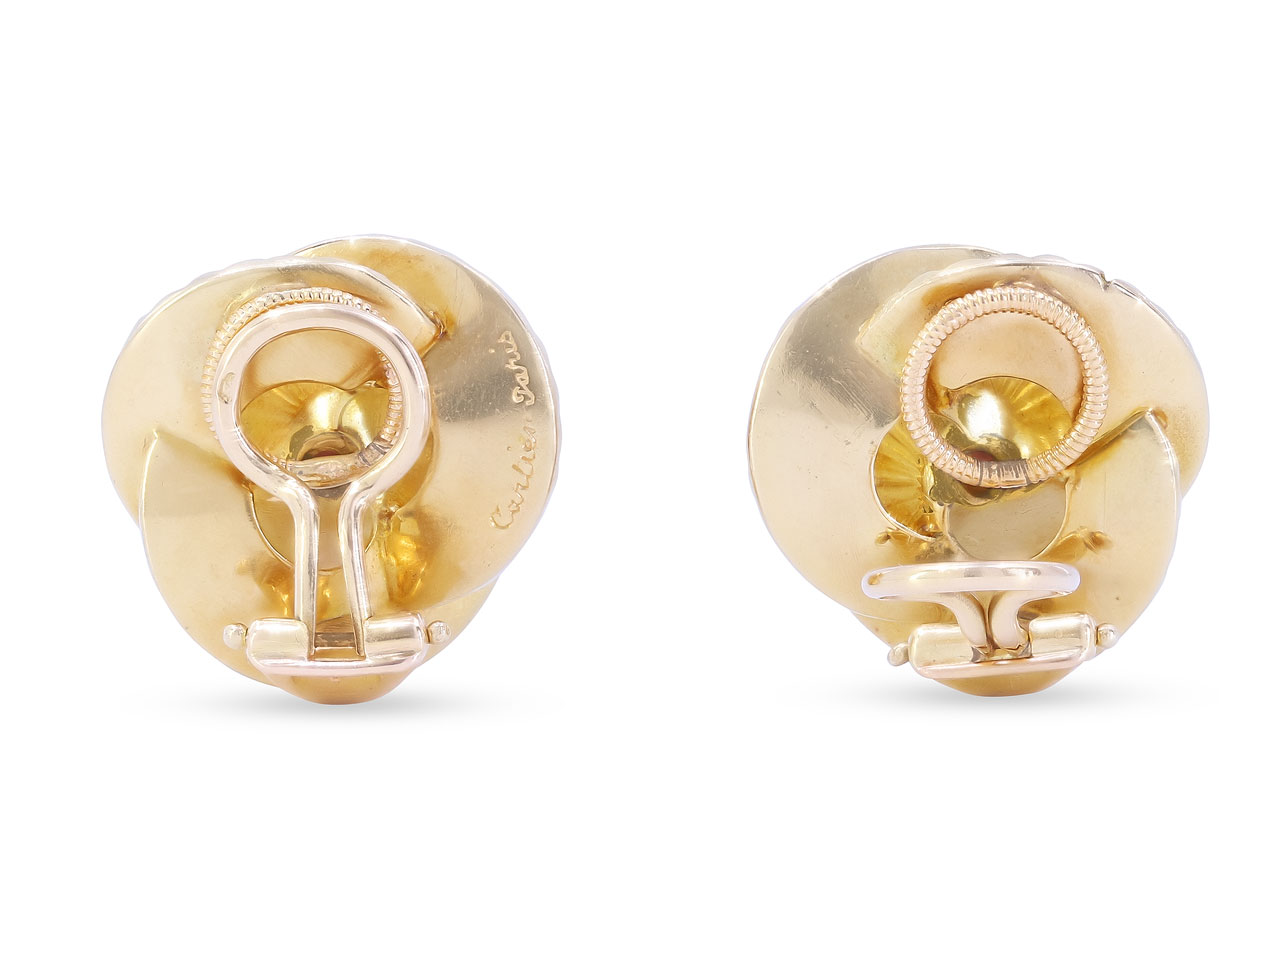 Retro Cartier Ruby Fan Earrings in 18K Gold